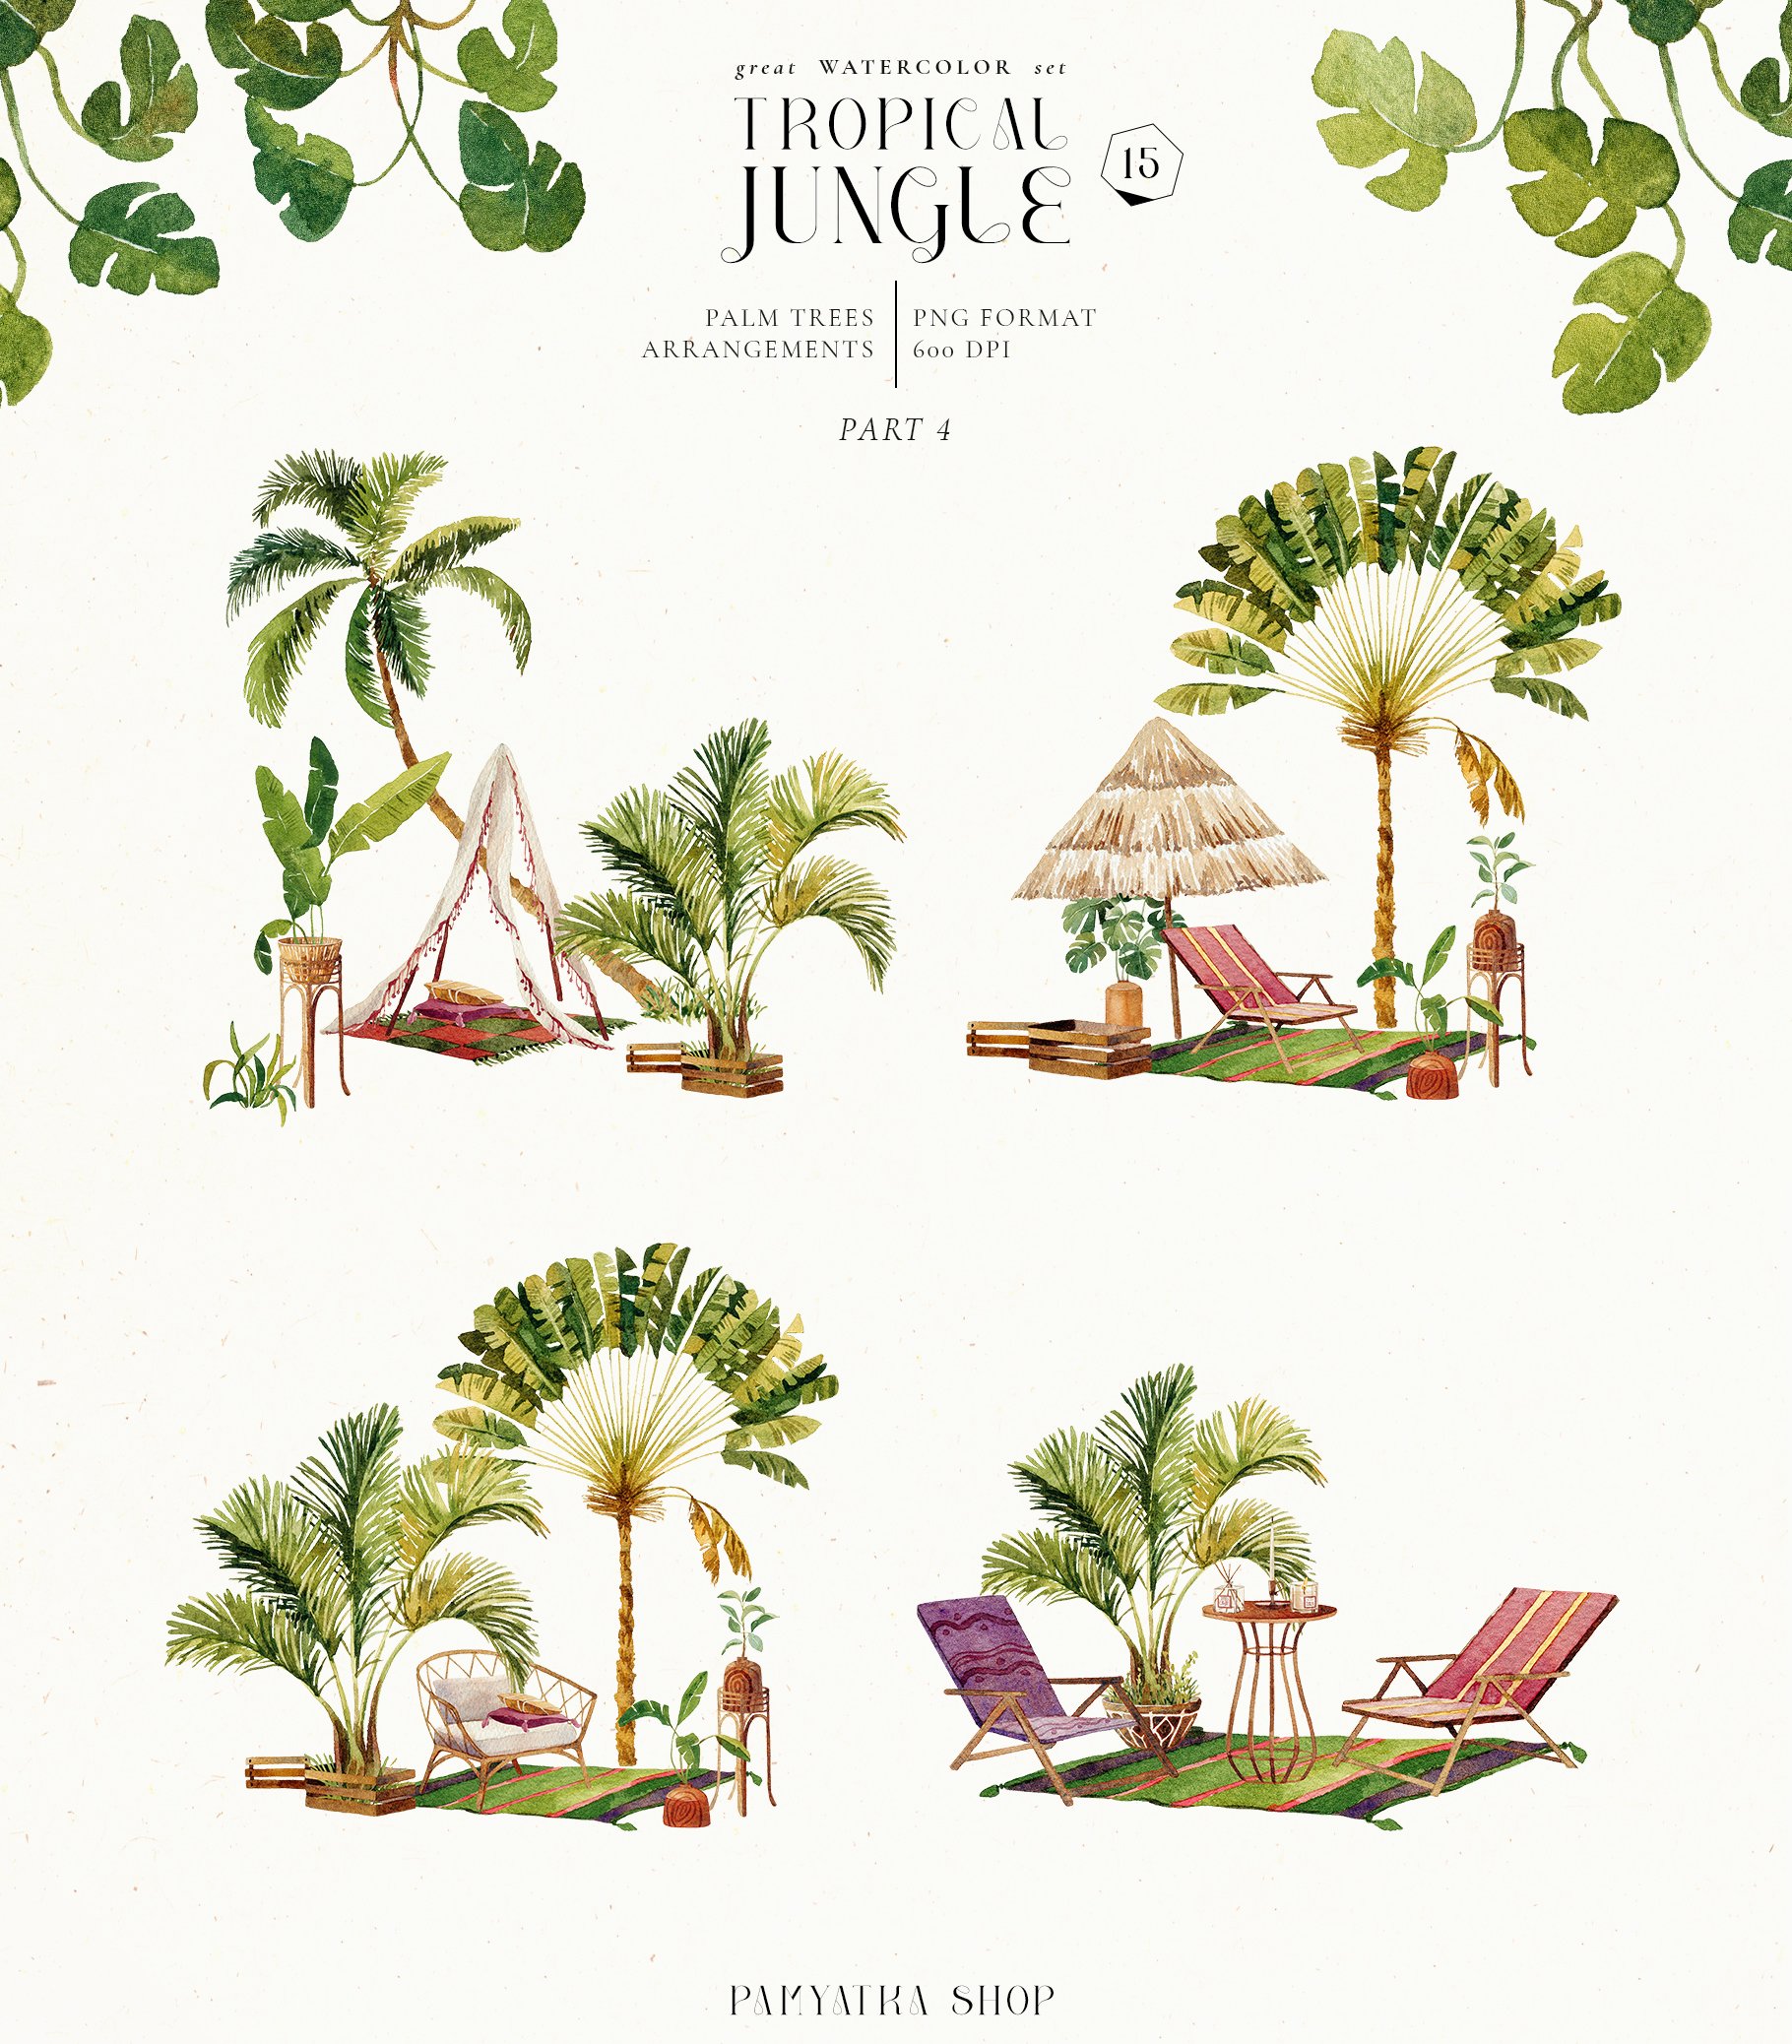 palm trees arrangements4 26